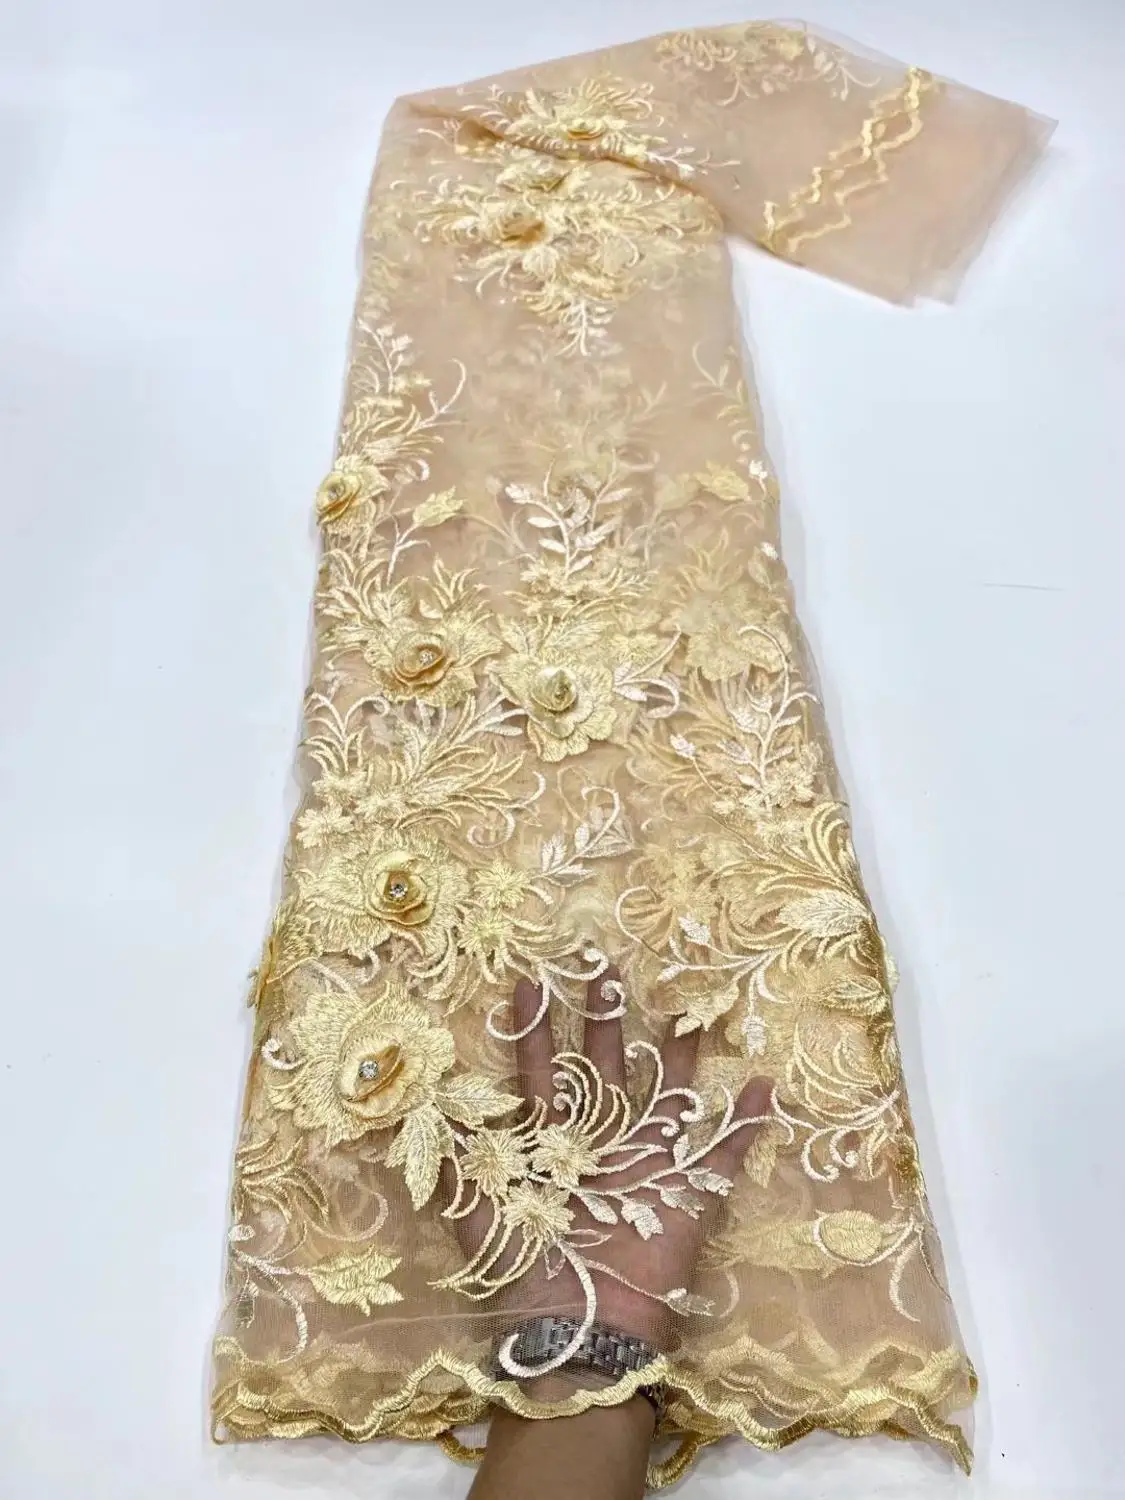 

3D цветок нигерийское кружево ткань 2020 золото Высокое качество Новая мода кружева дизайн тюль кружевная ткань с большими камнями вечерние а...